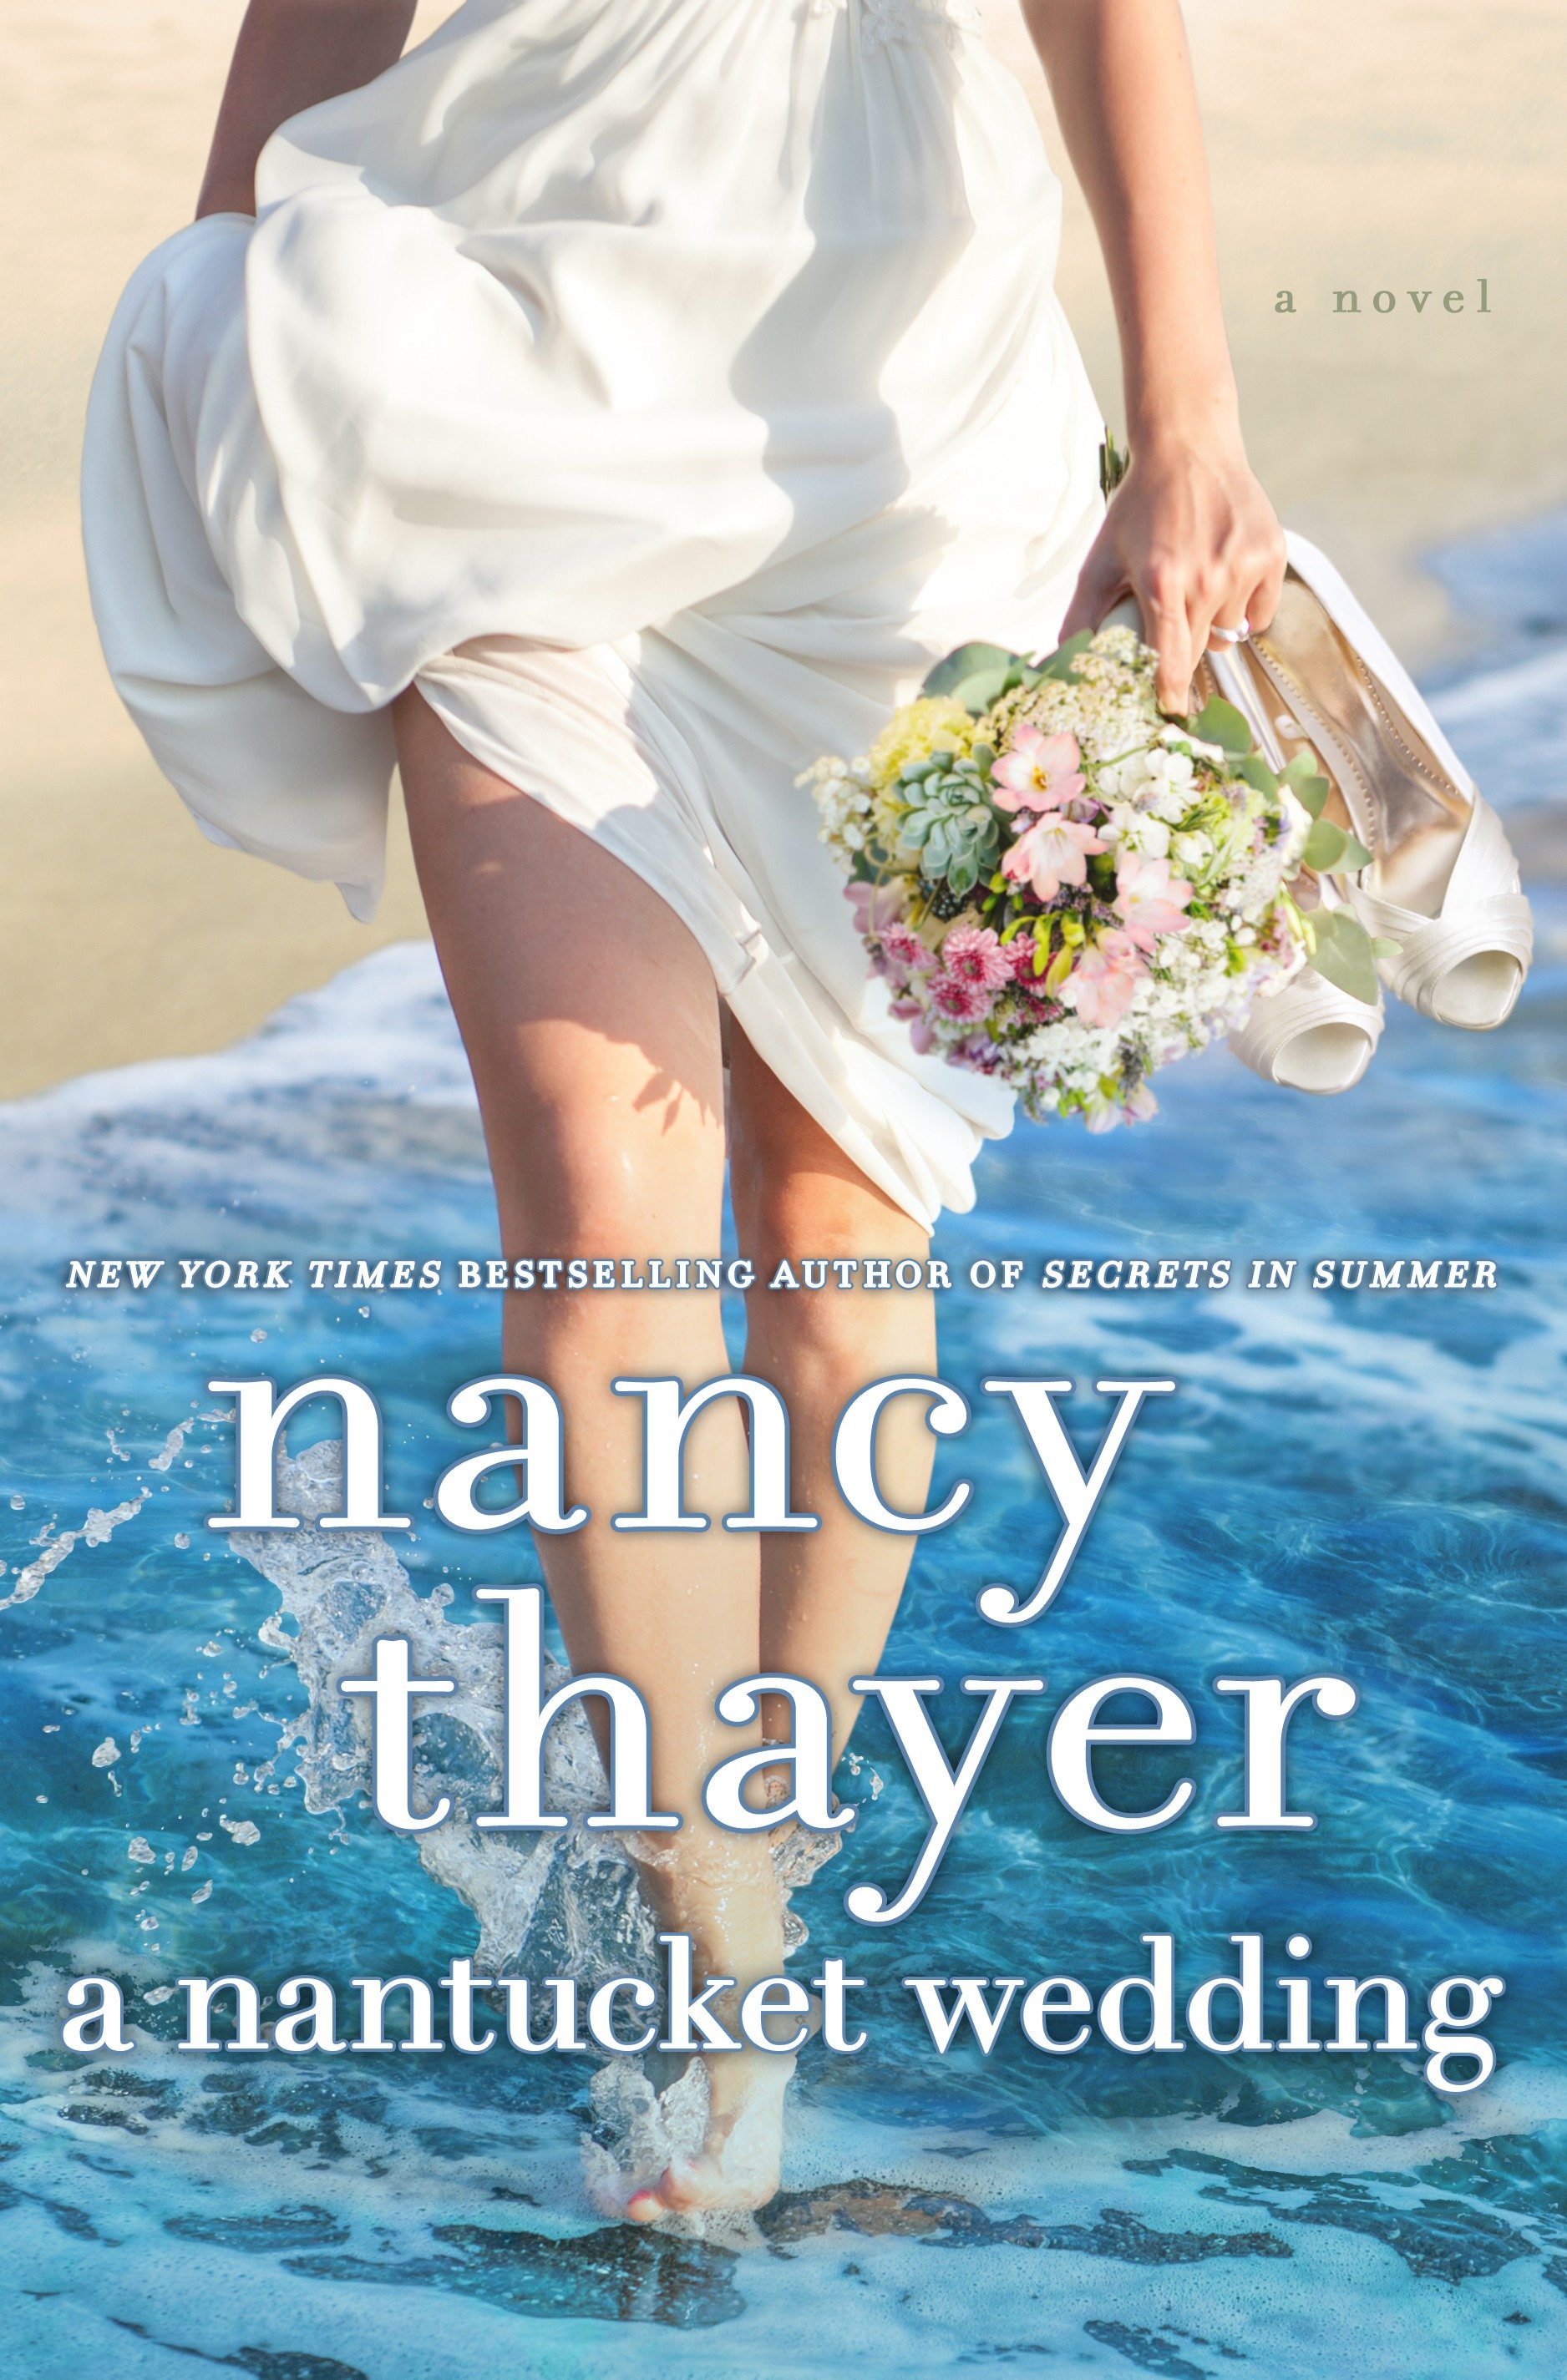 A Nantucket wedding cover image